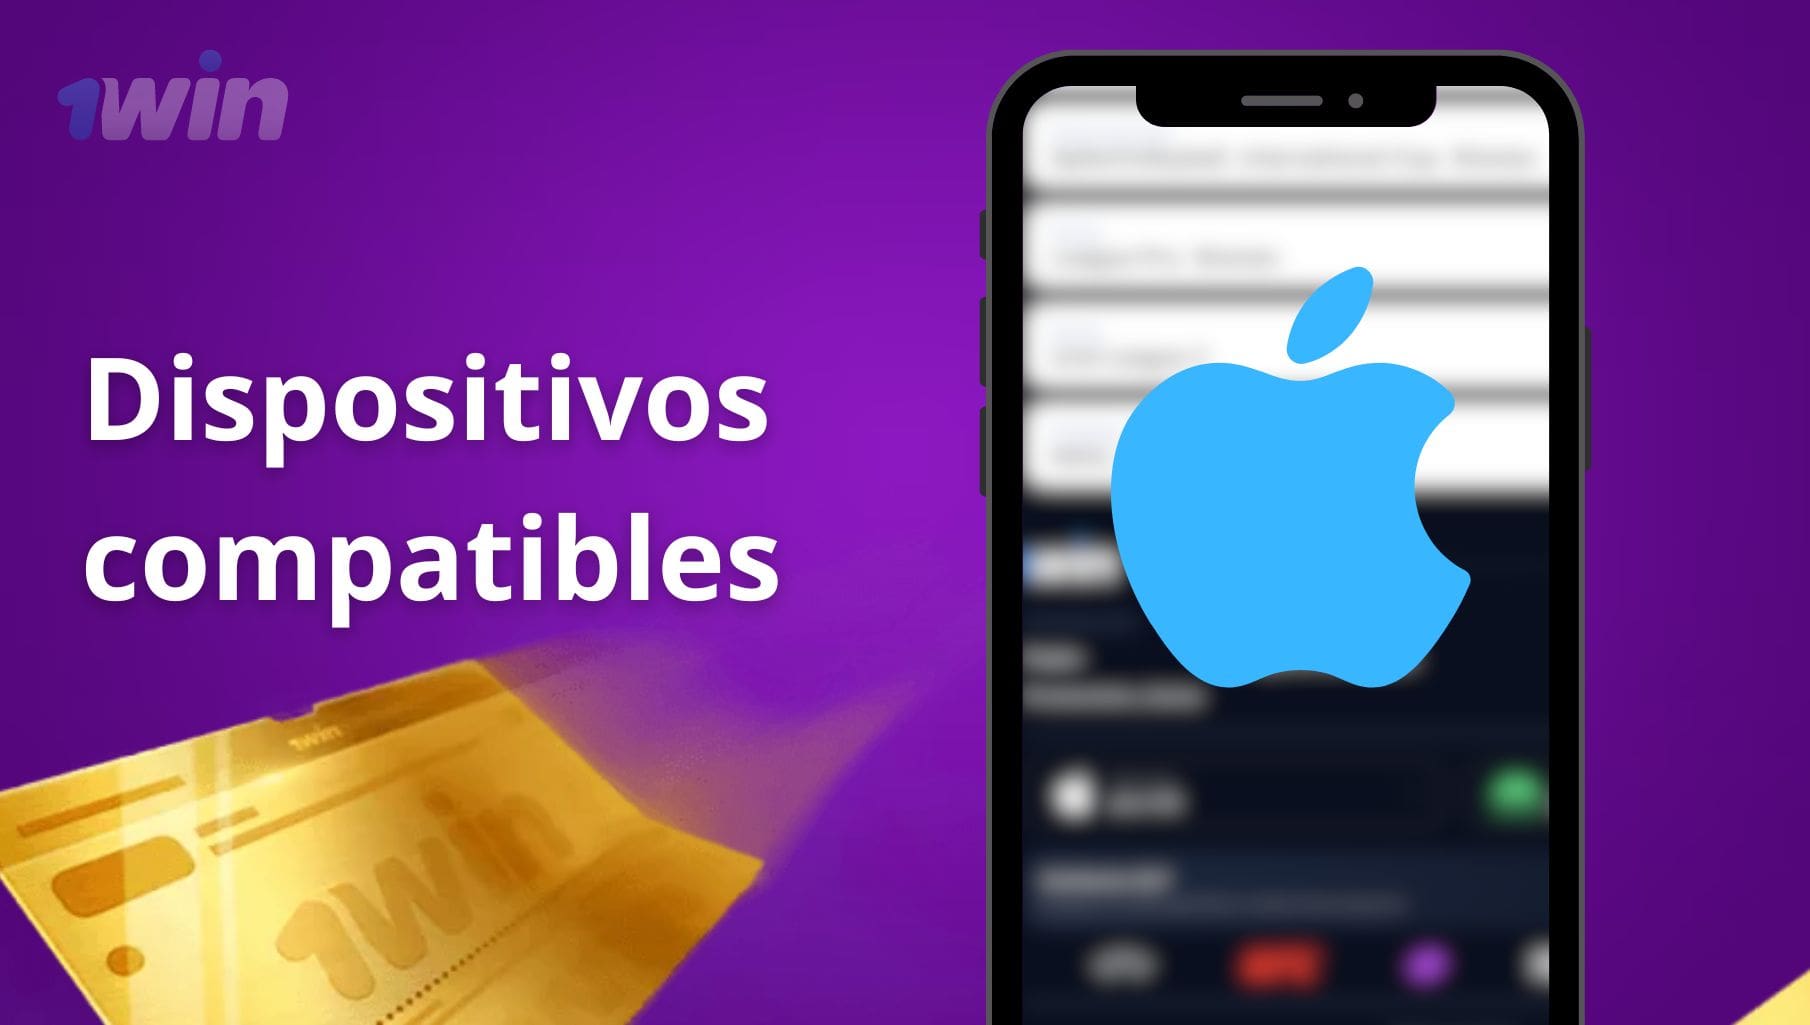 1win Colombia aplicación móvil iOS Dispositivos compatibles